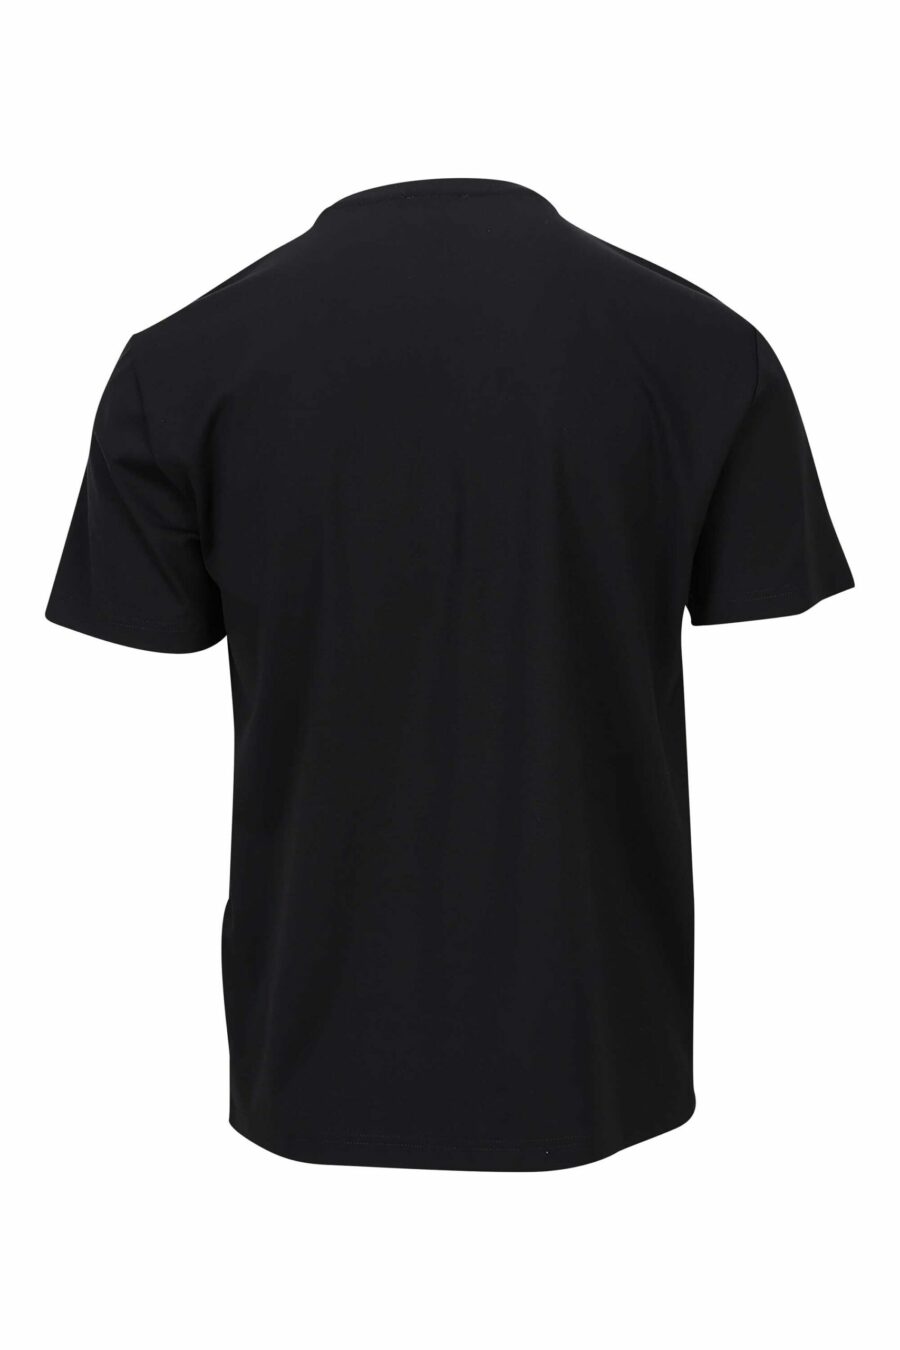 Schwarzes T-Shirt mit monochromem "lux identity" Maxilogo - 8057767688646 1 skaliert